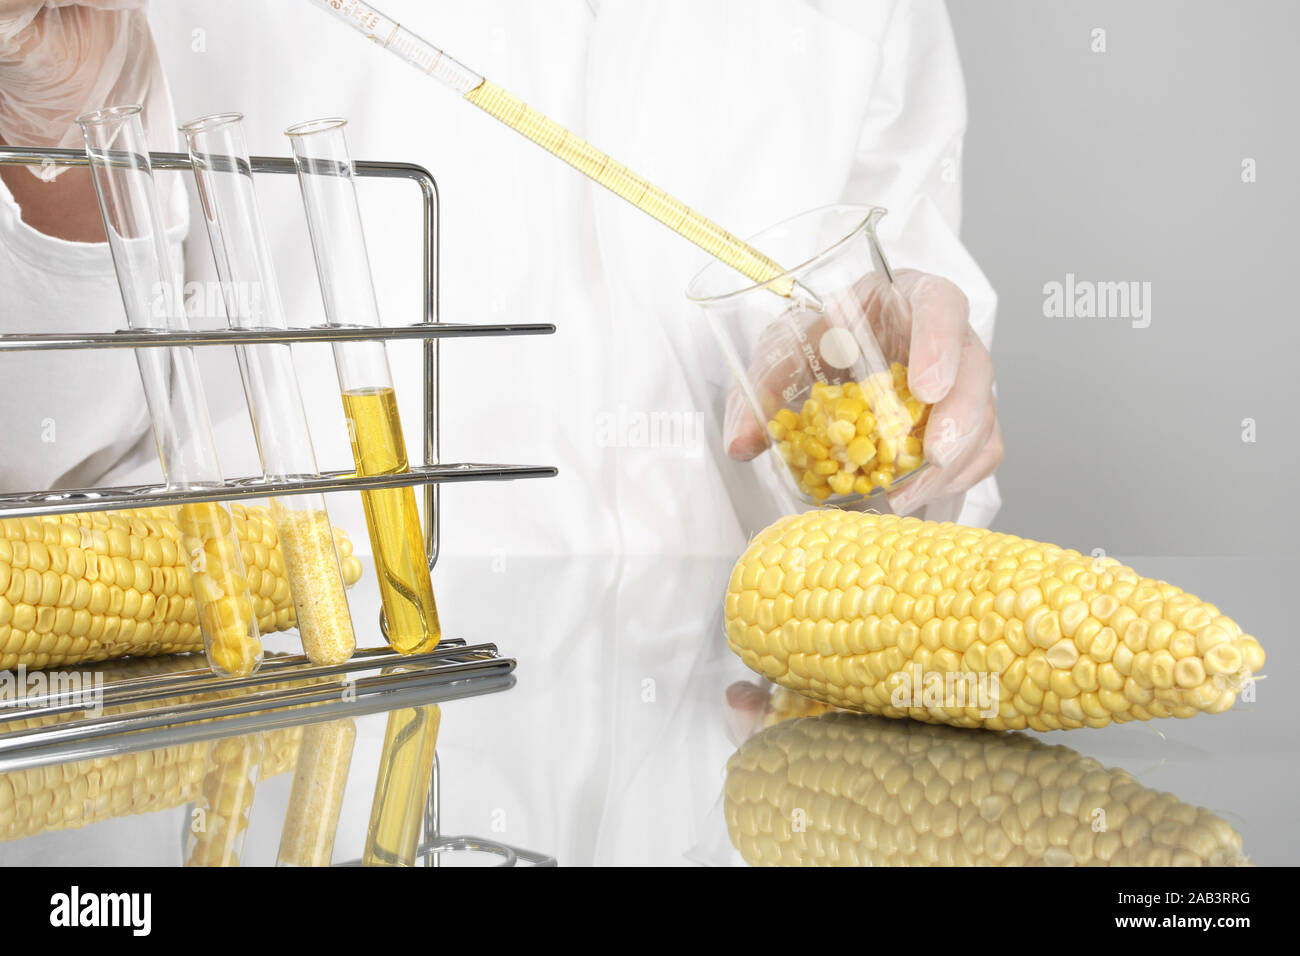 Untersuchung von Mais im Labor Stock Photo